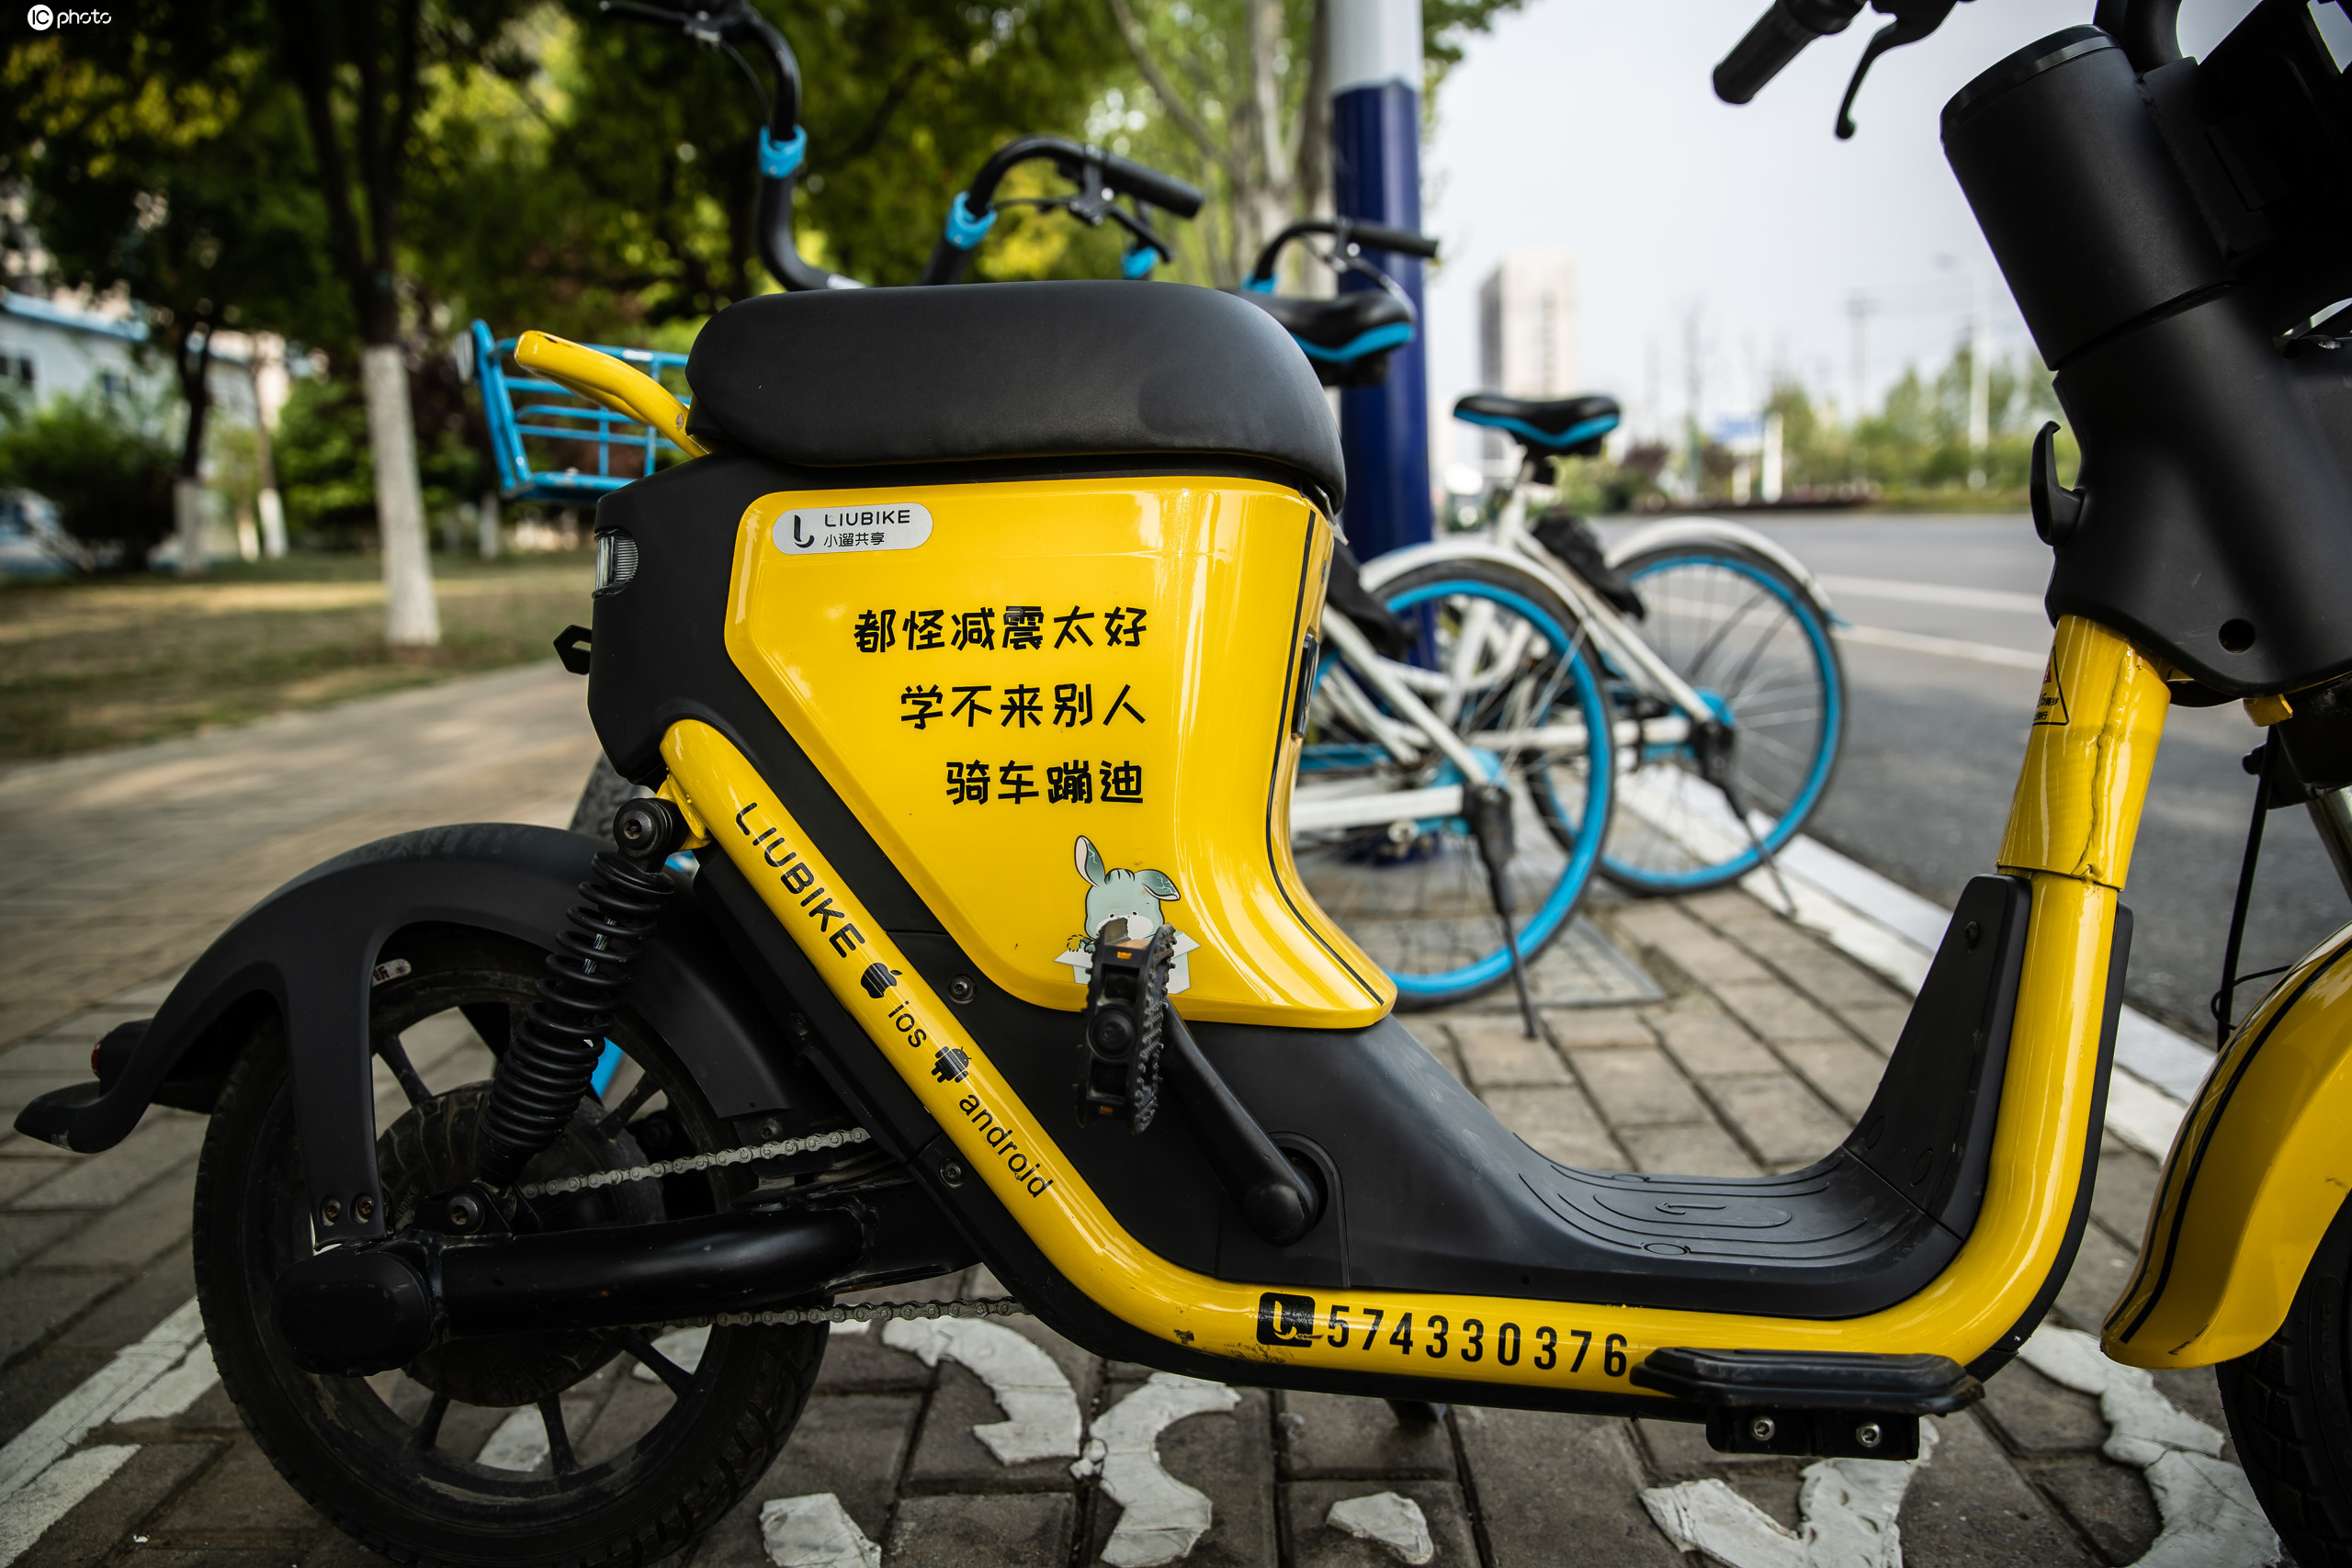 小遛共享电单车现身合肥街头黄色萌系设计搭配有趣车身标语